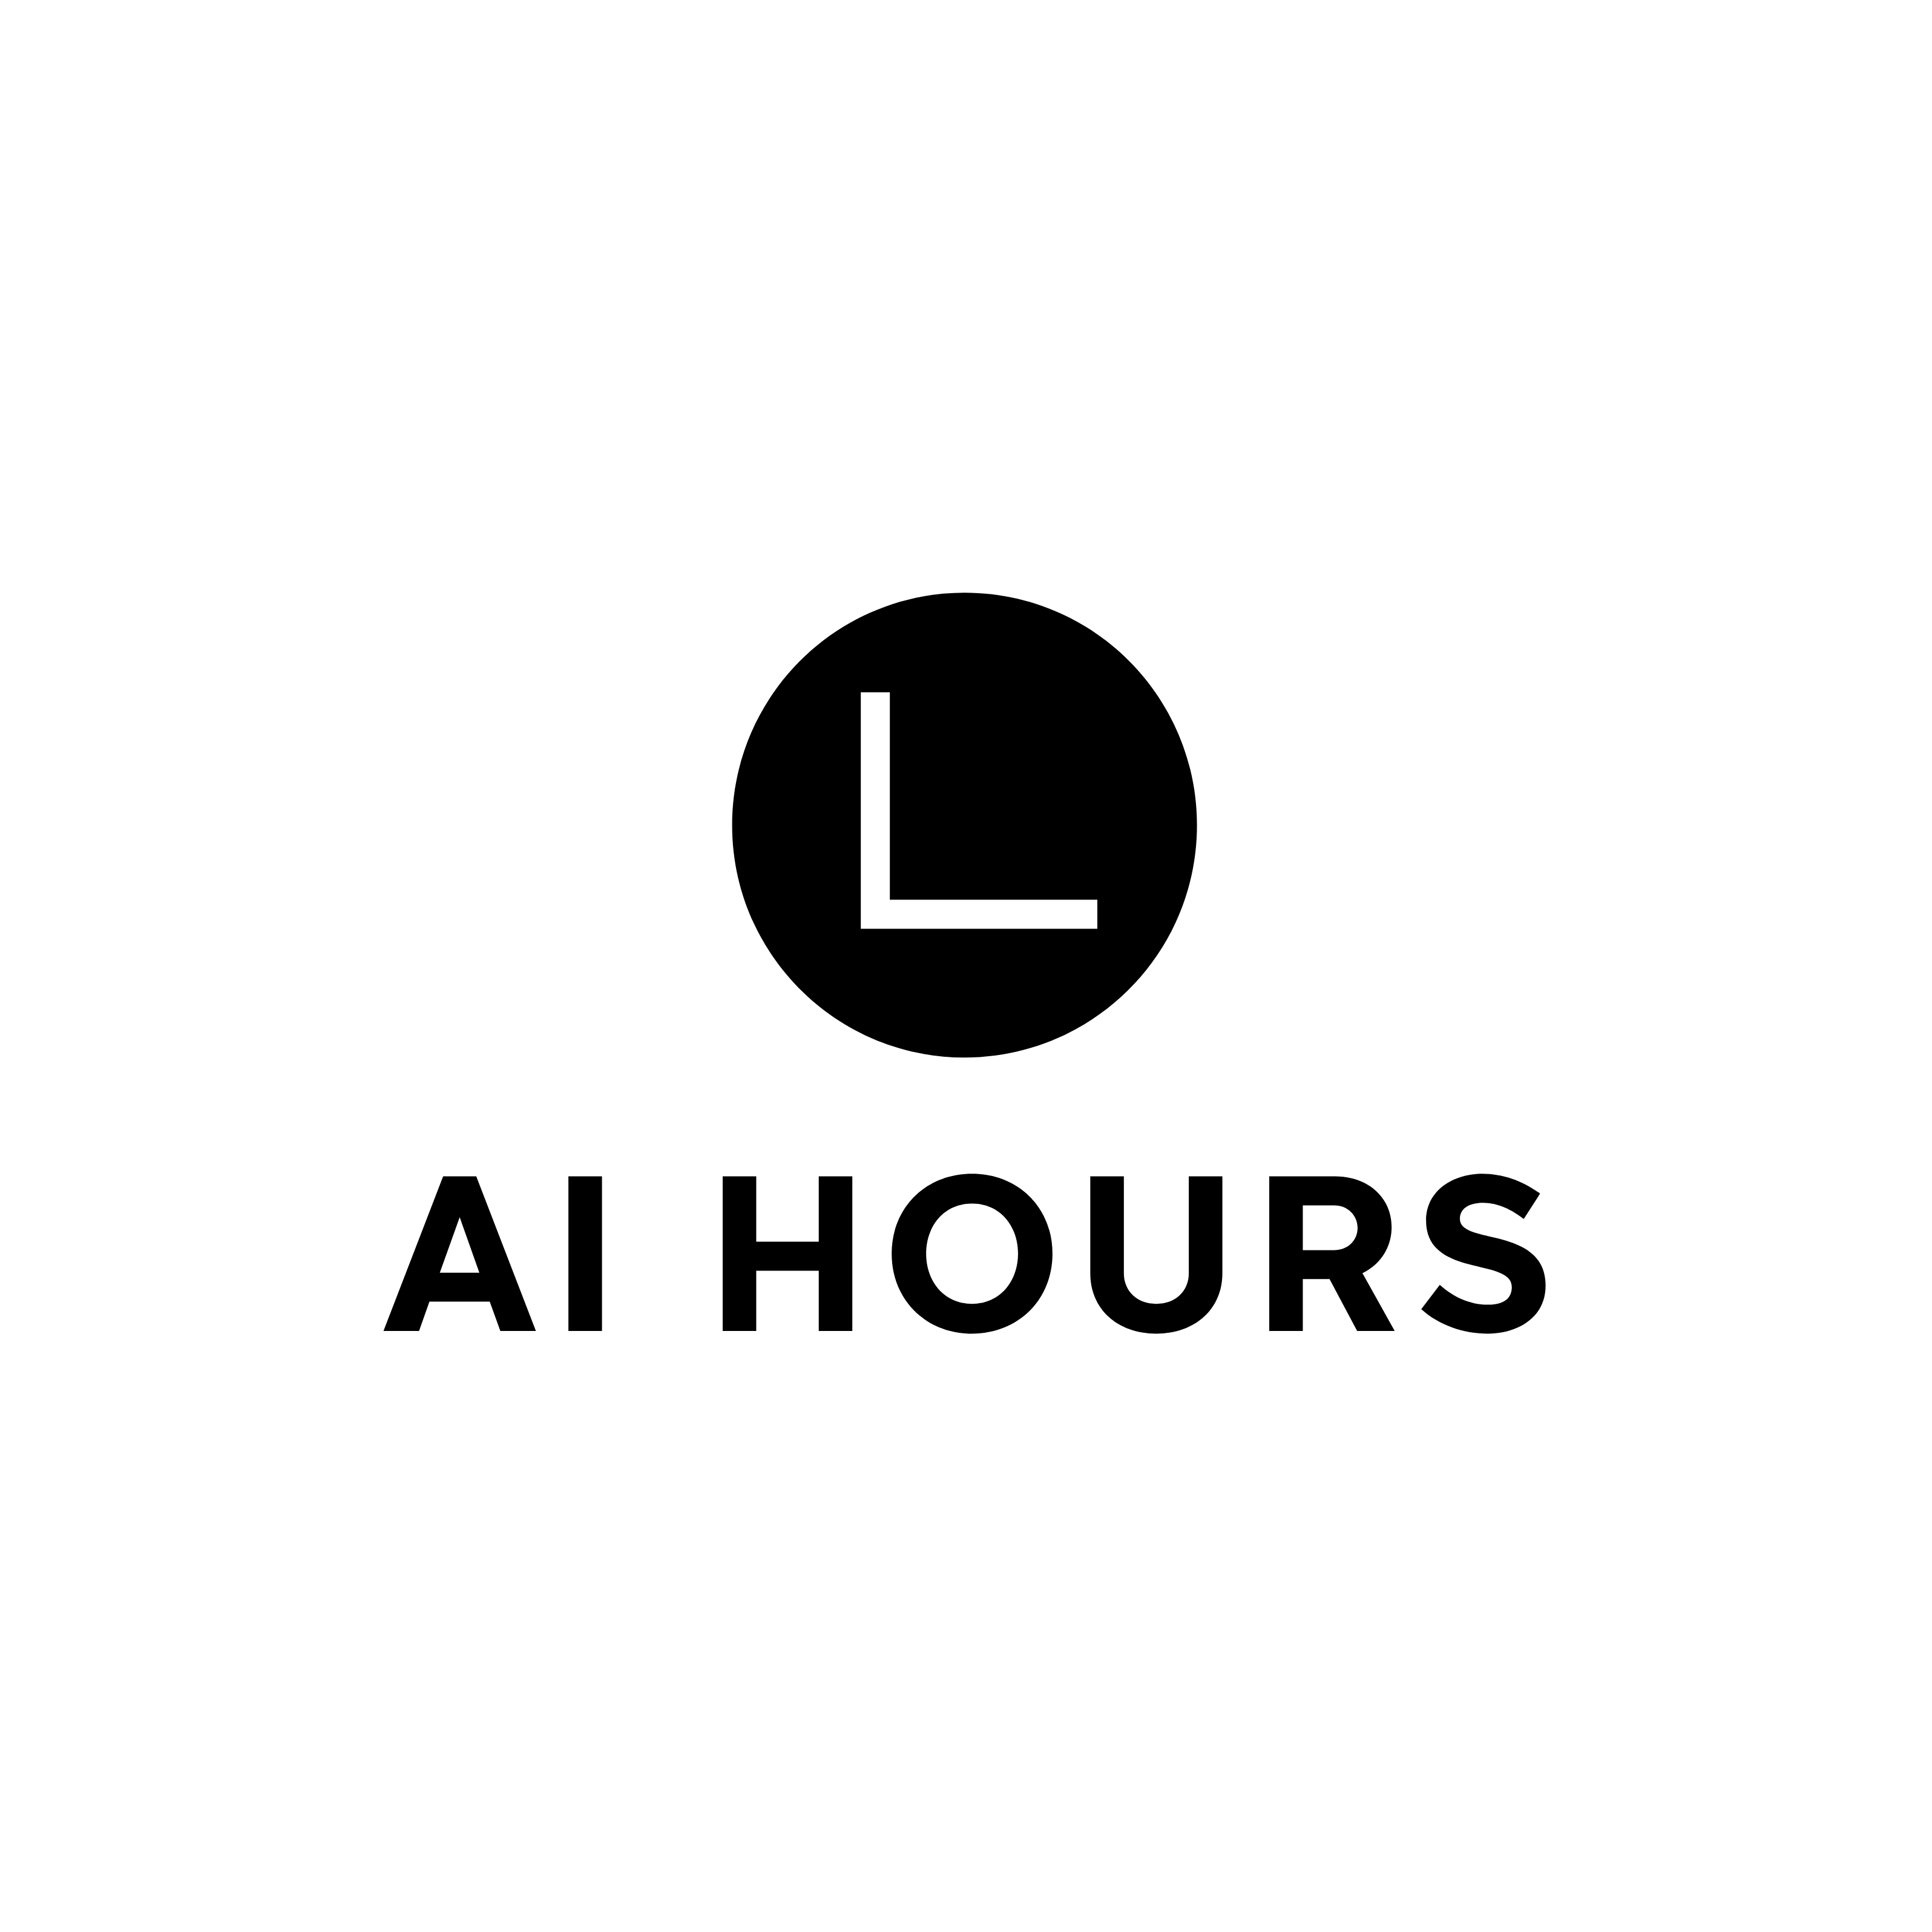 AI hours